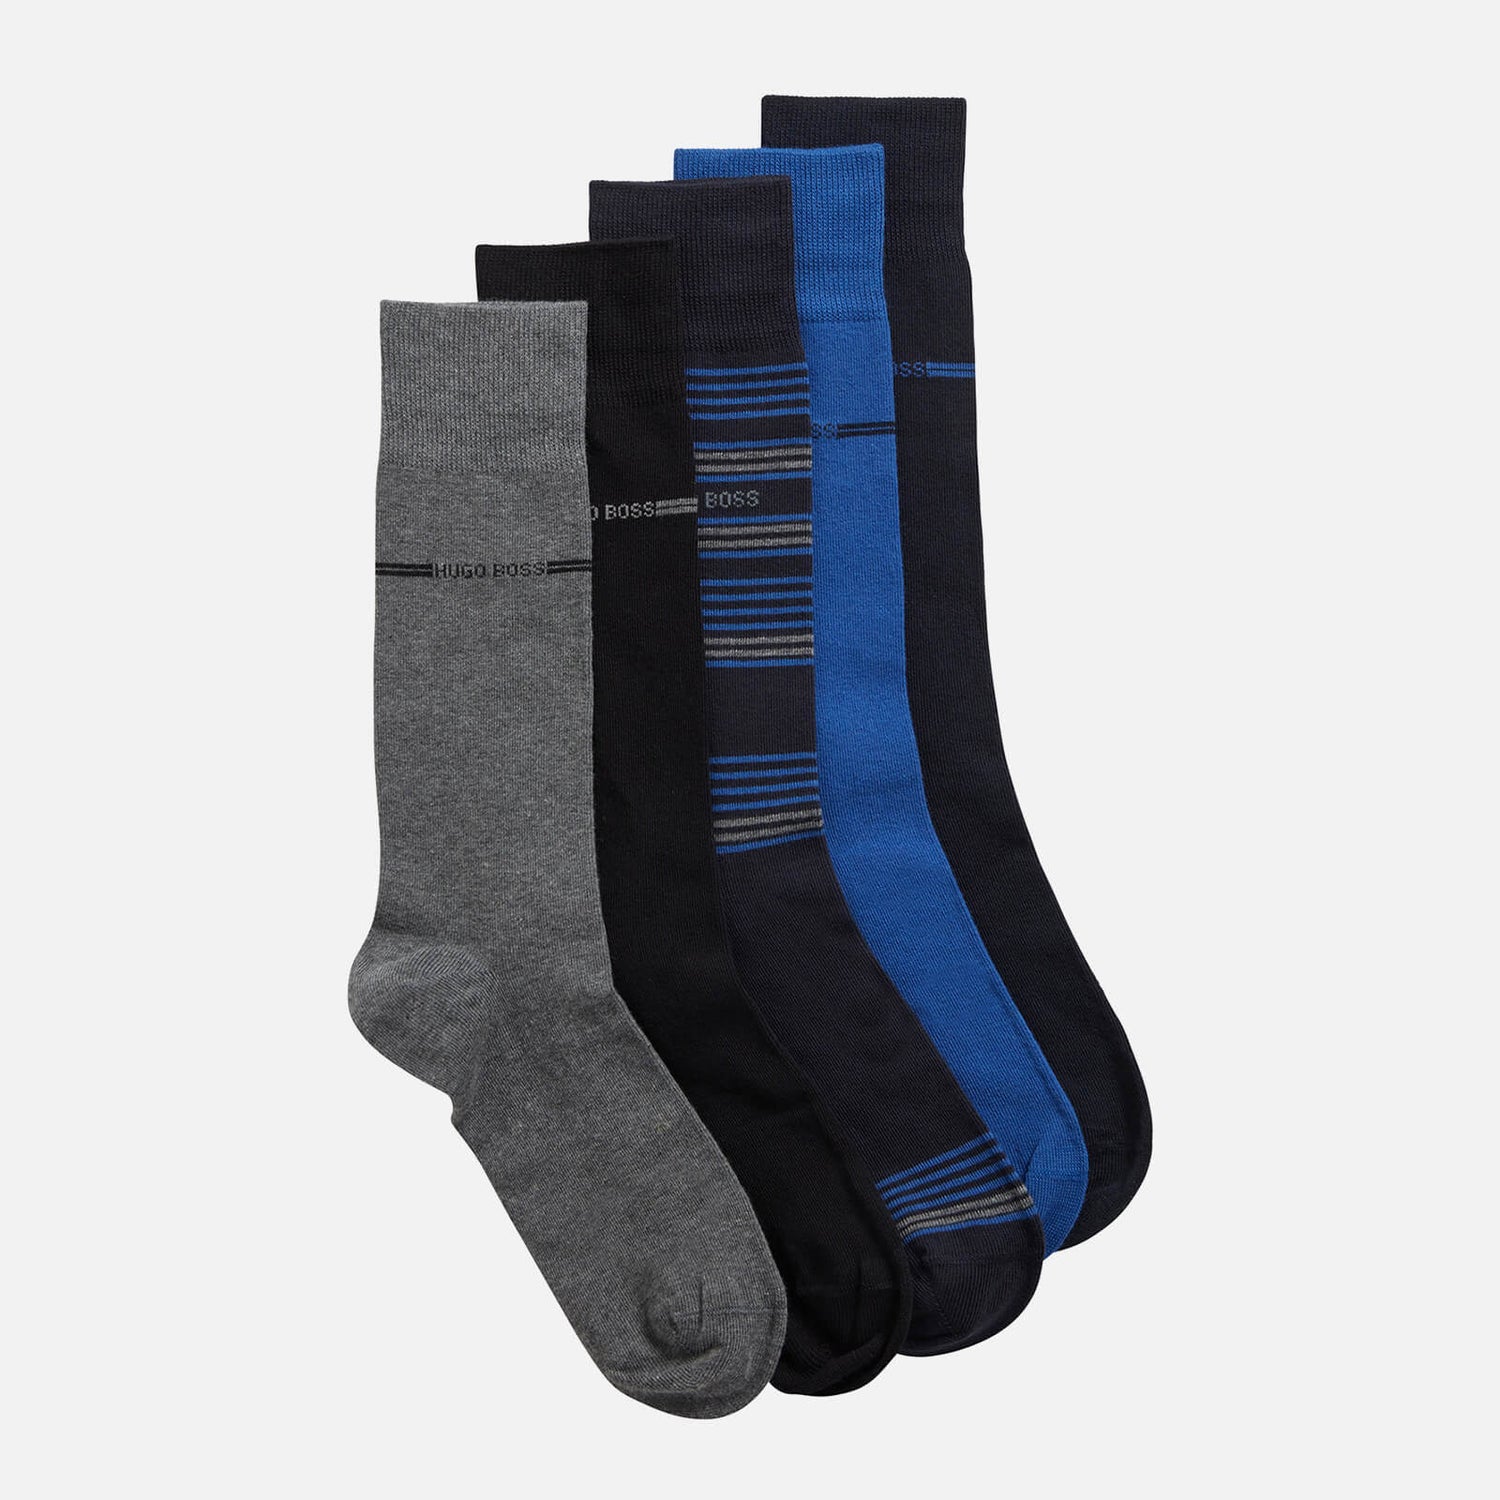 BOSS Bodywear Men's 5-Pack Gift Set Socks - Multi - 40-46